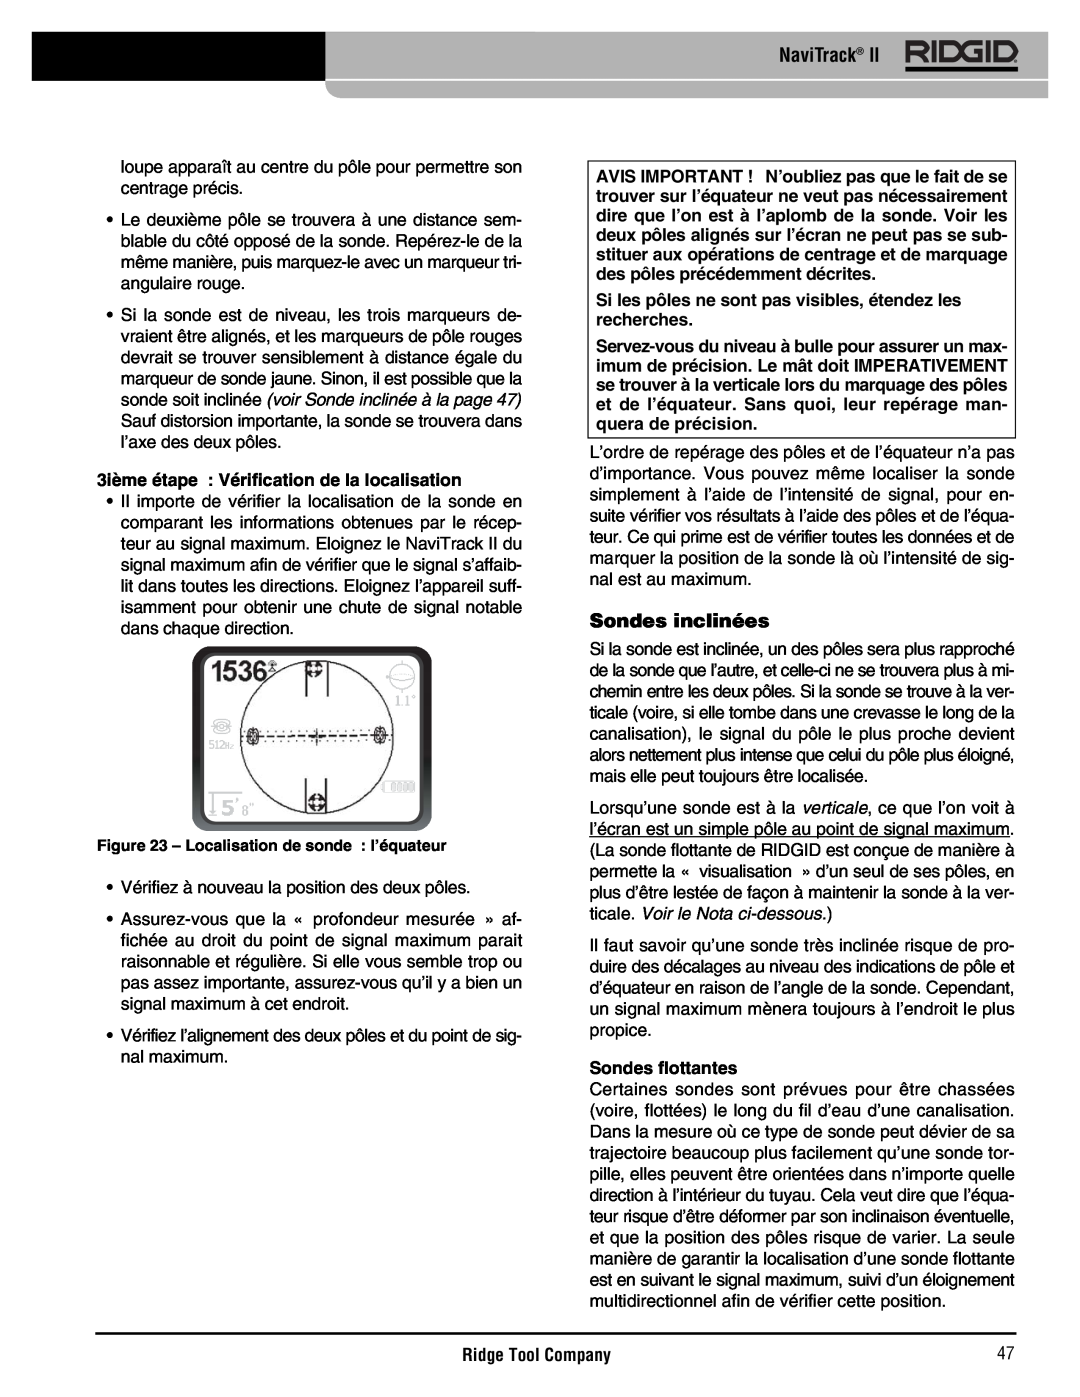 RIDGID Metal Detector manual Sondes inclinées, 3ième étape Vérification de la localisation, Sondes flottantes, NaviTrack 